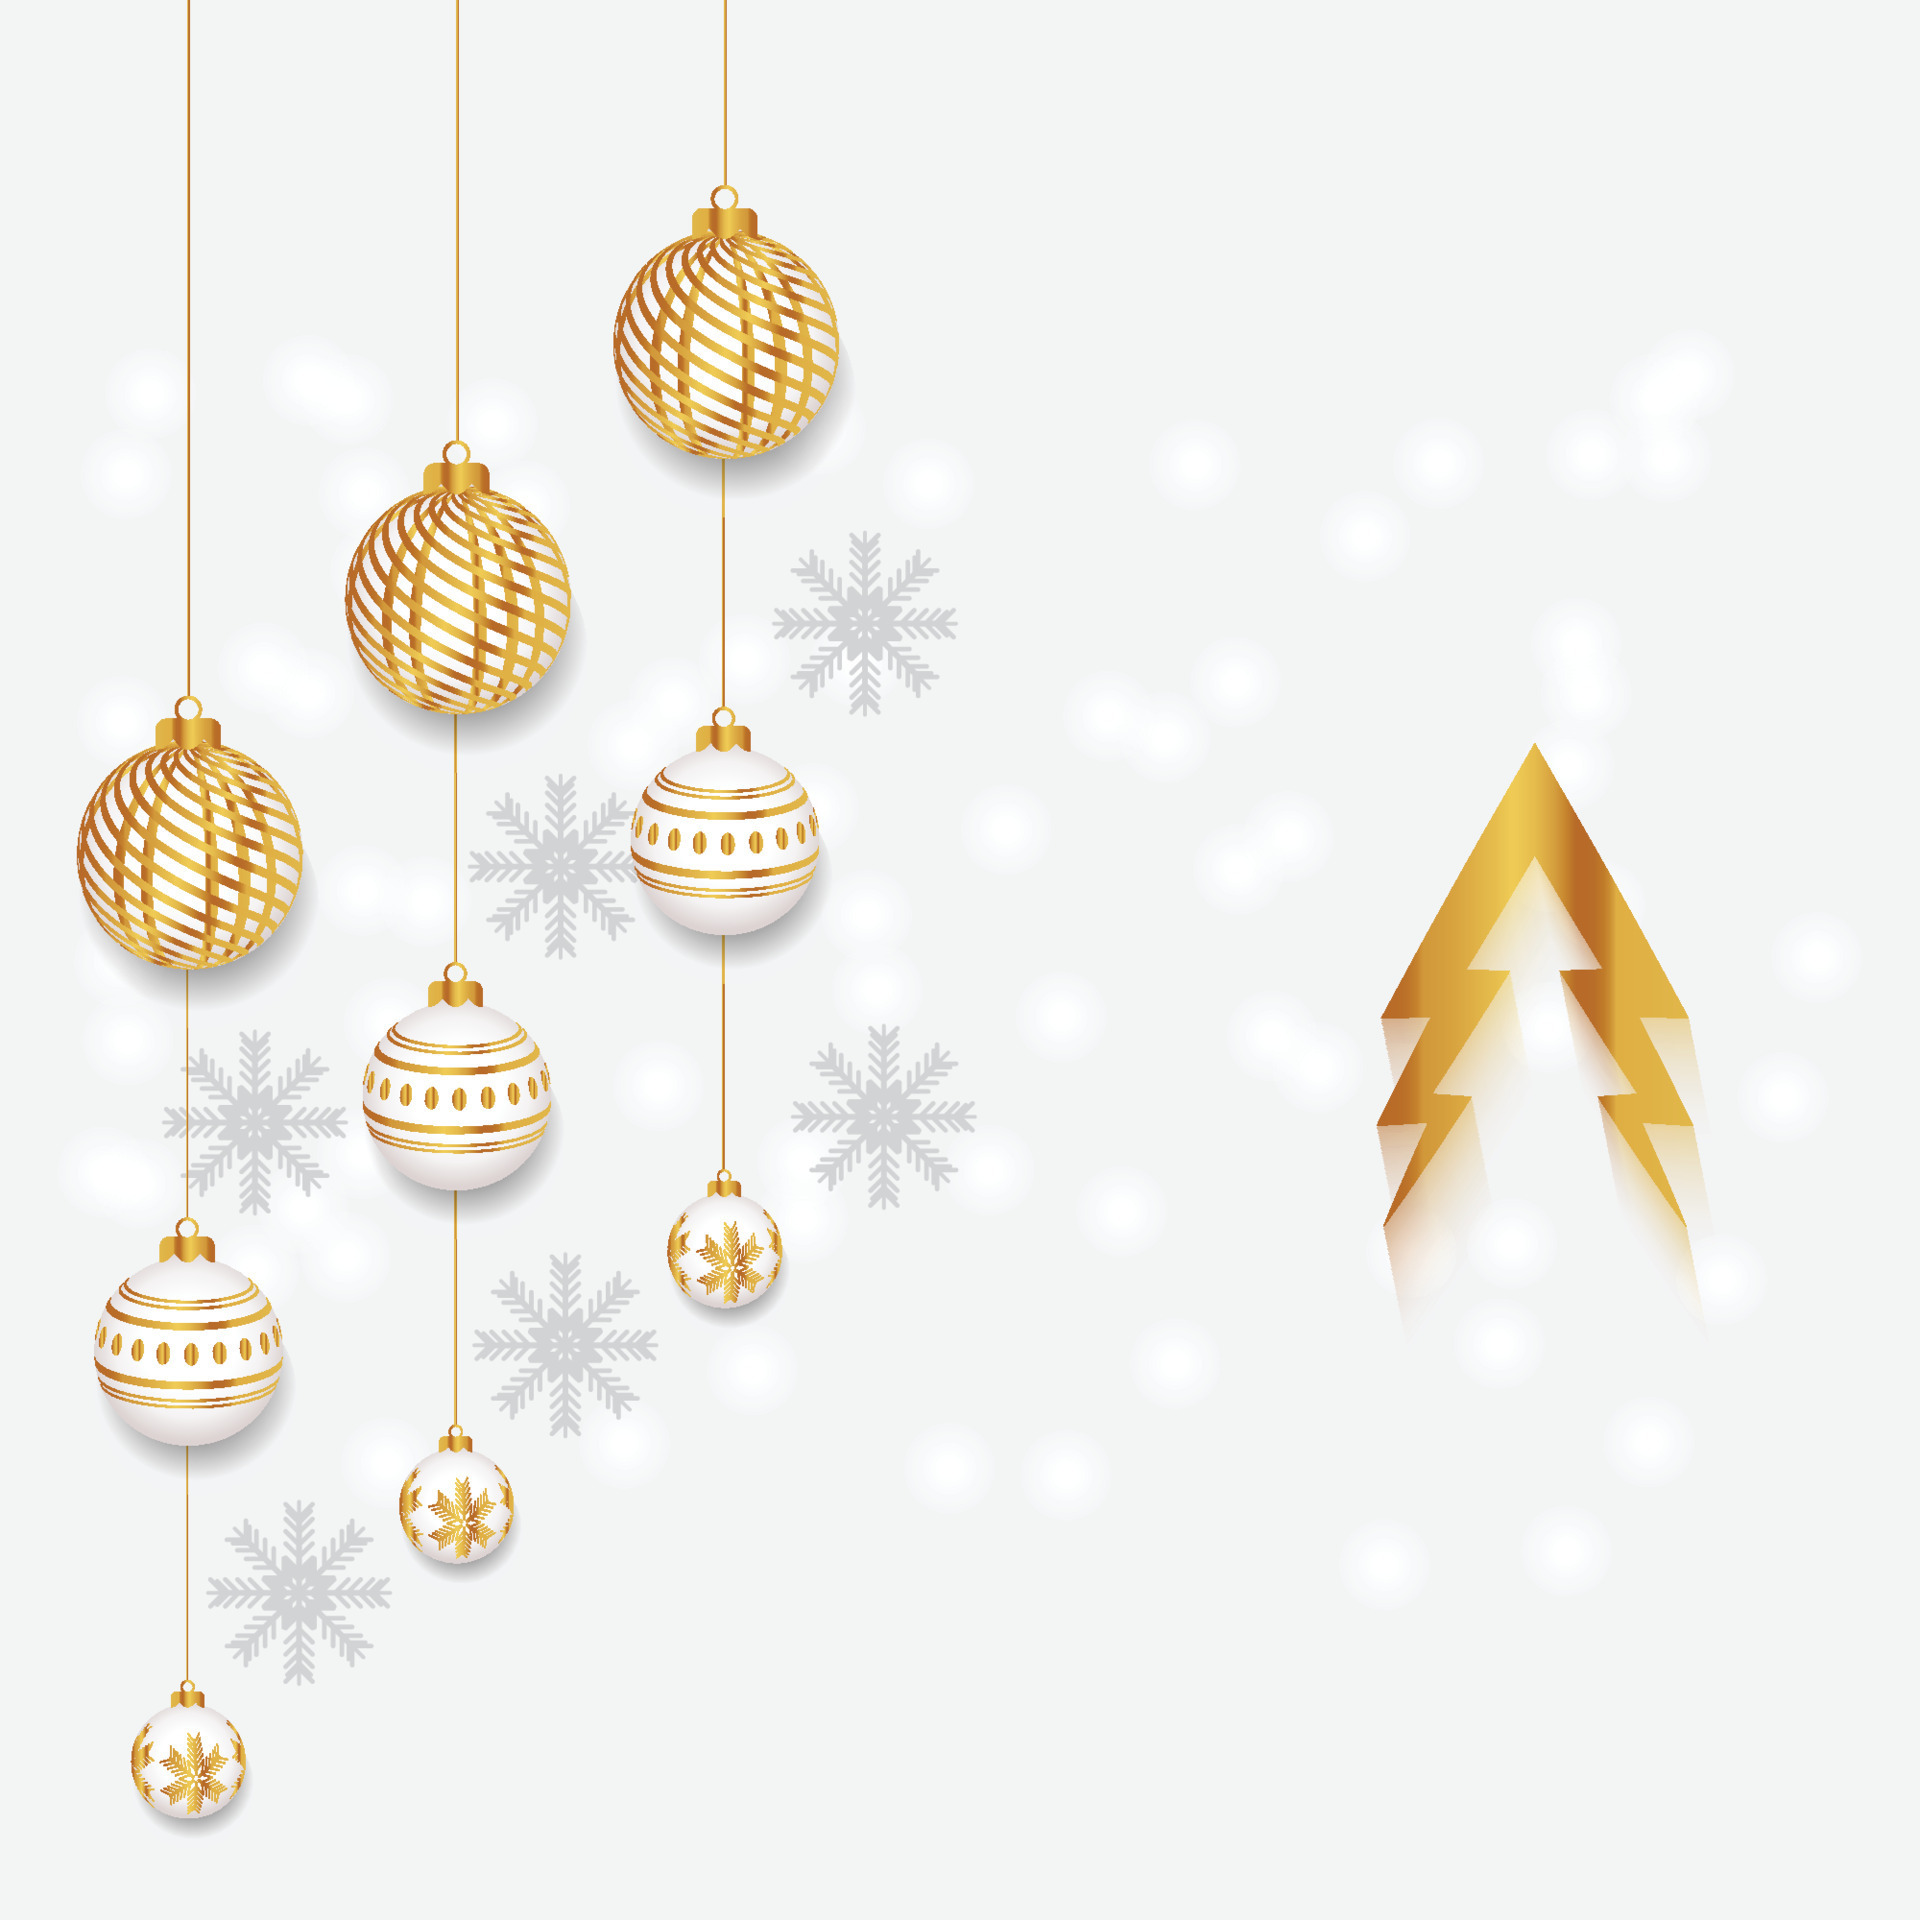 Thiết kế chữ viết New Year và Christmas màu vàng trên nền trắng tỏa sáng và rực rỡ. Những hình ảnh đặc sắc này sẽ mang đến không khí lễ hội cho gia đình bạn trong dịp cuối năm.